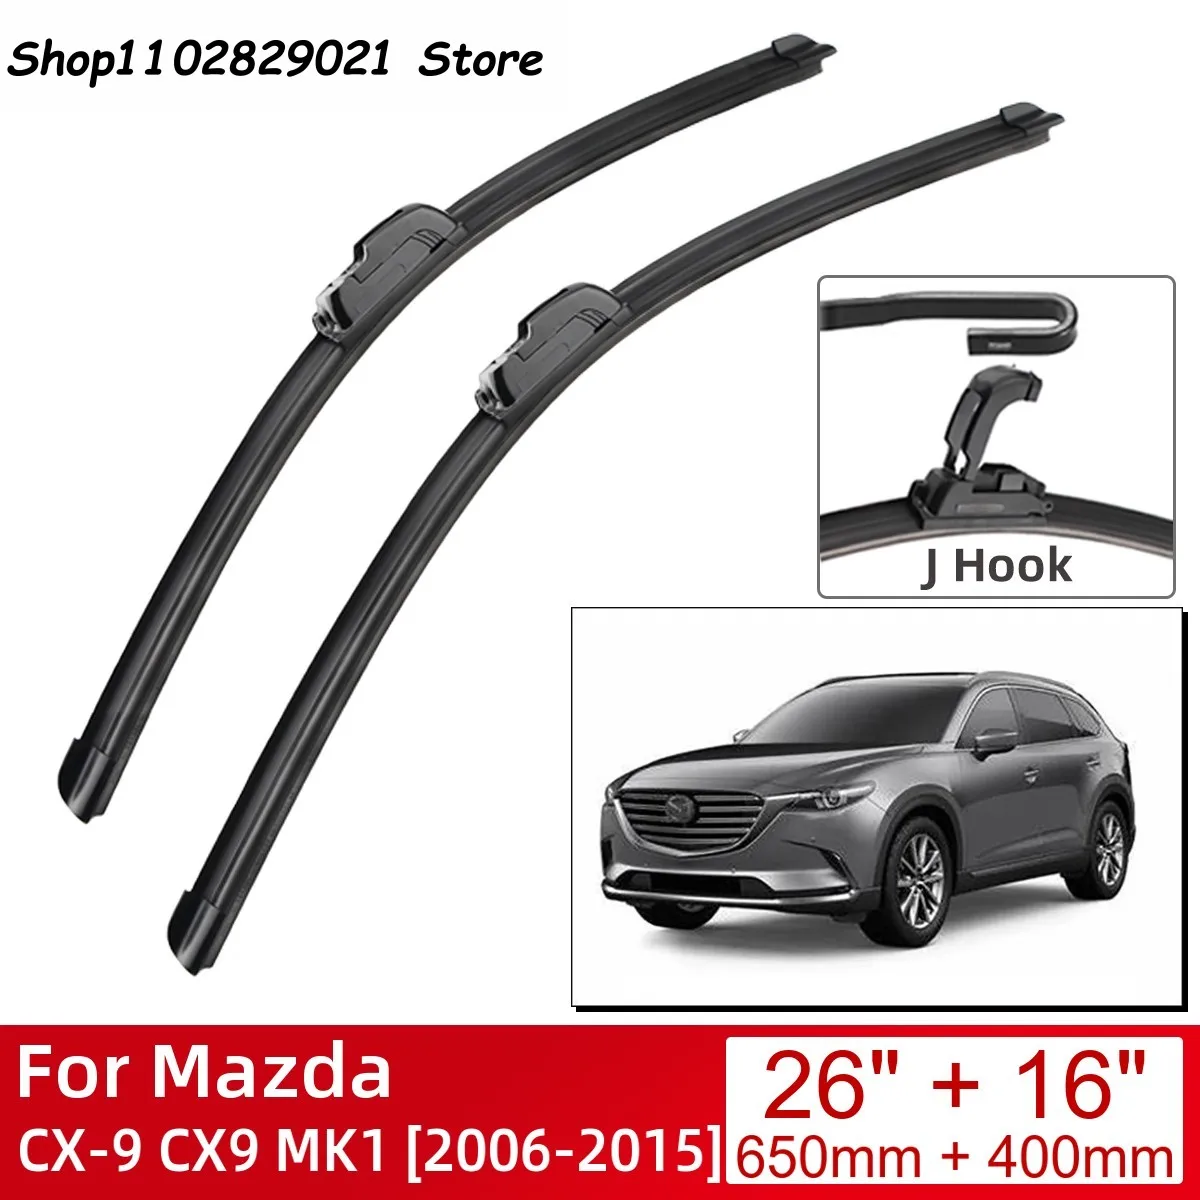 

For Mazda CX-9 CX9 MK1 2006-2015 26"+16" Car Accessories Front Windscreen Wiper Blade Brushes Wipers U Type J Hooks 2015 2014